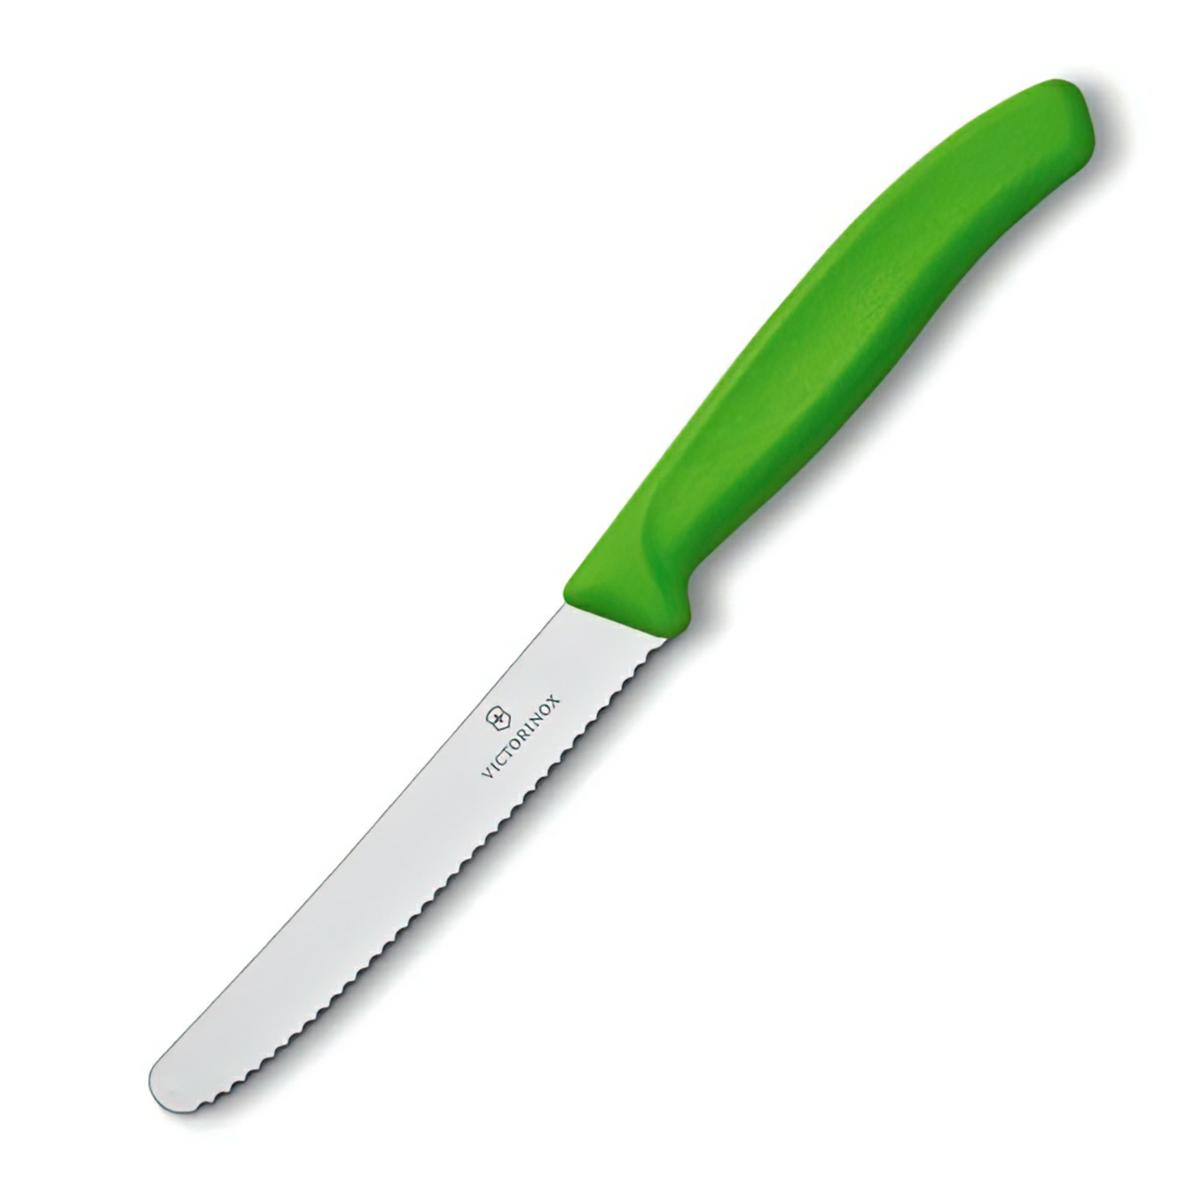 Victorinox nóż uniwersalny 11cm ząbkowany zielony.